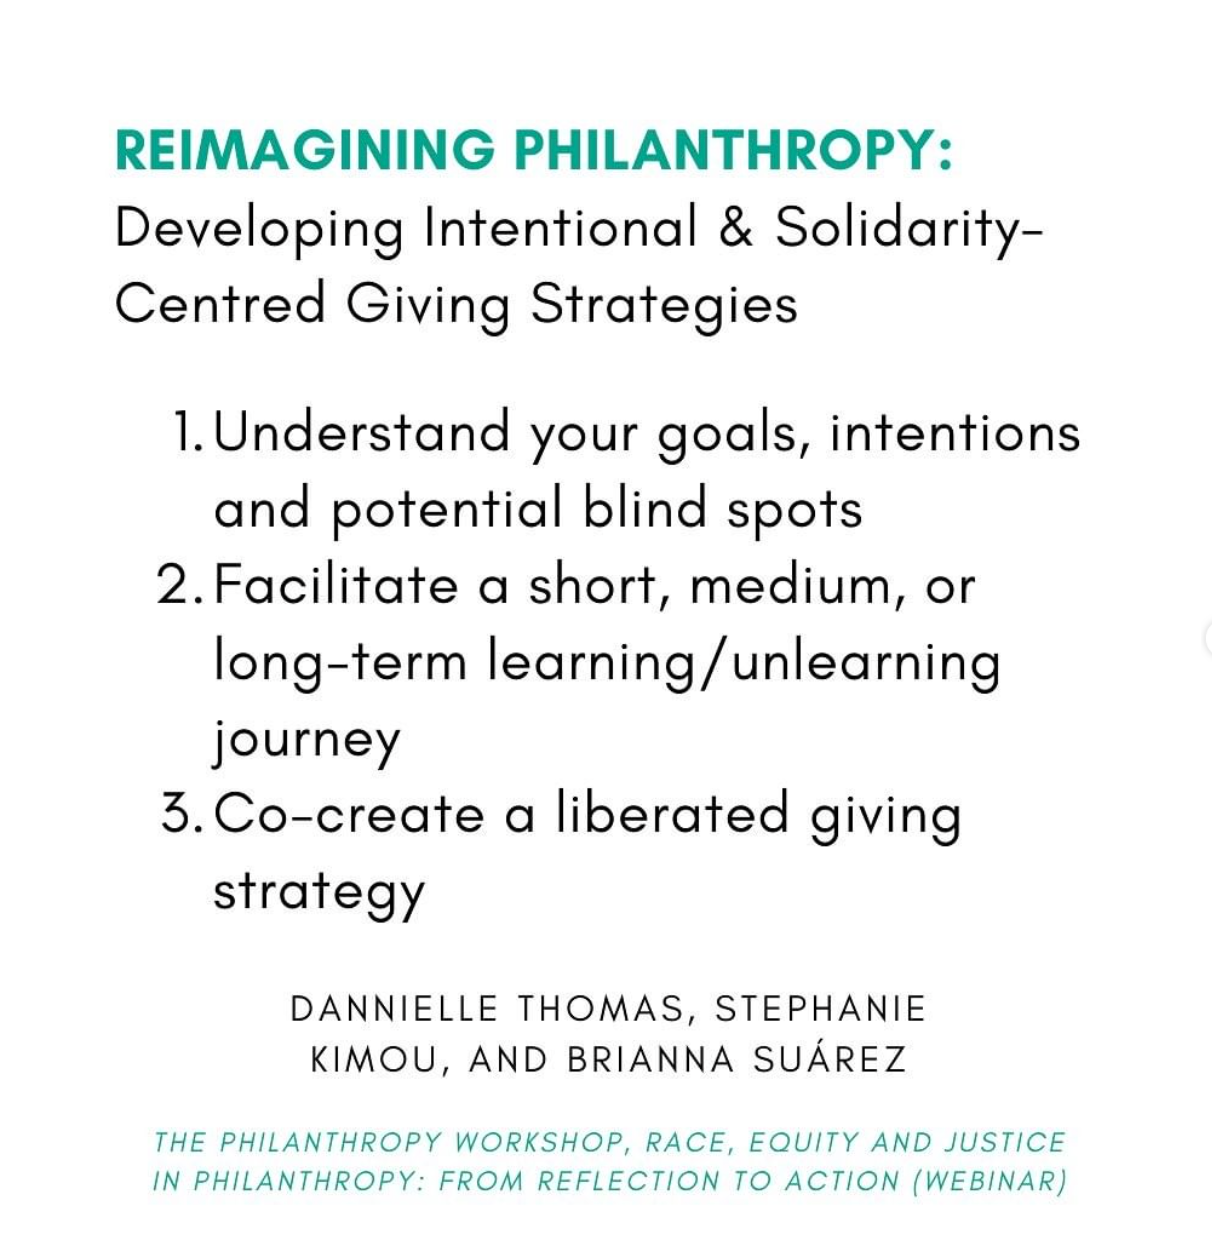 Jan 25 | Reimagining Philanthropy 